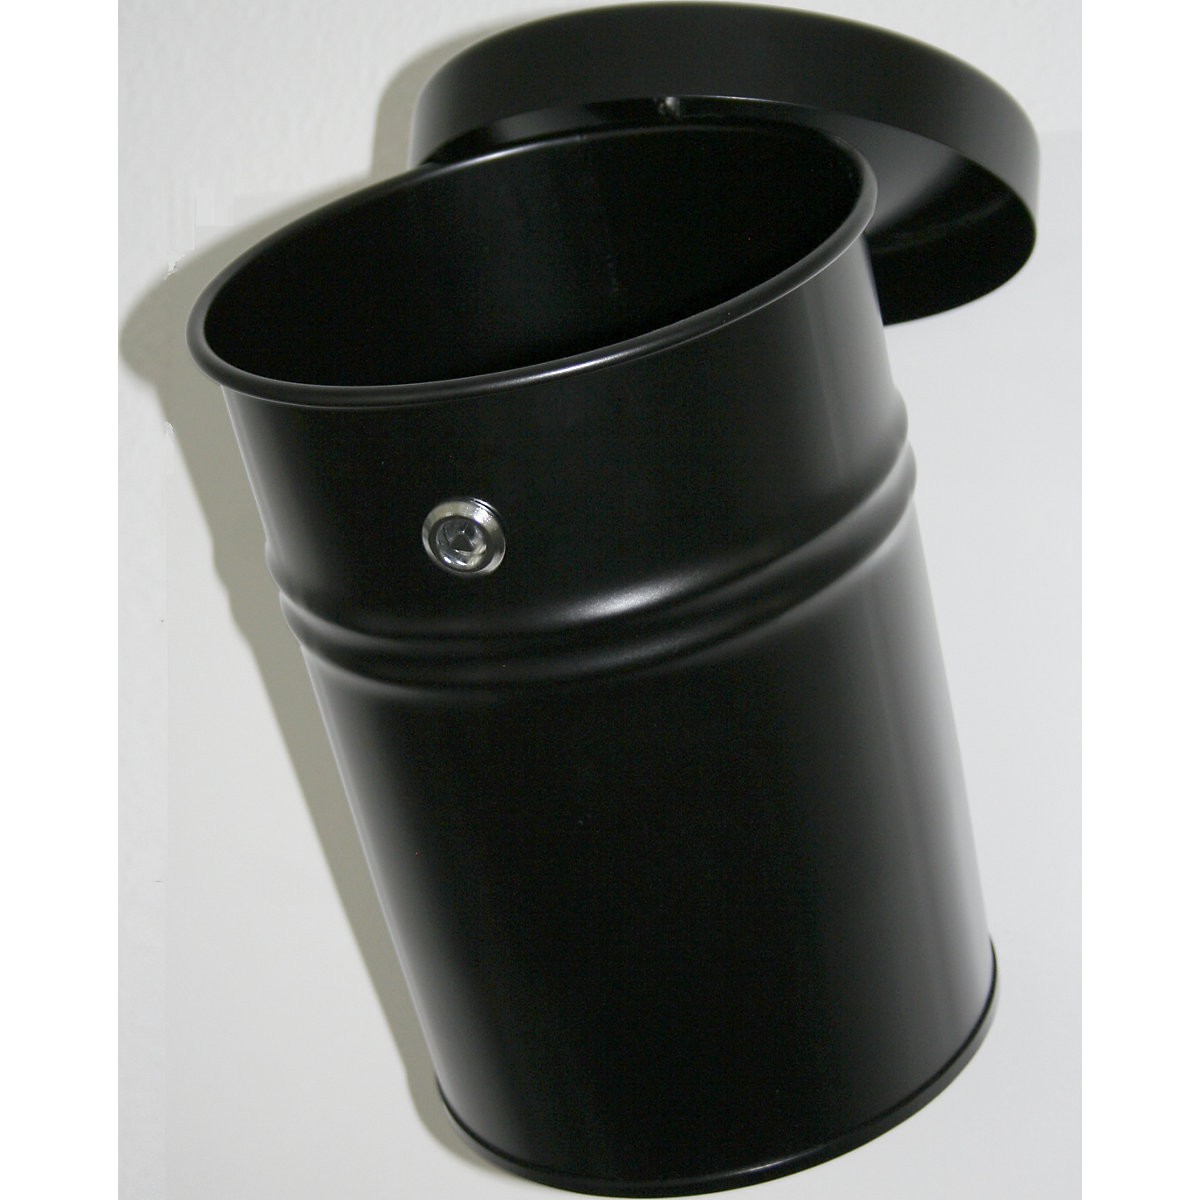 Nástěnná nádoba na odpadky, uzamykatelná, objem 16 l, v x Ø 340 x 245 mm, černá